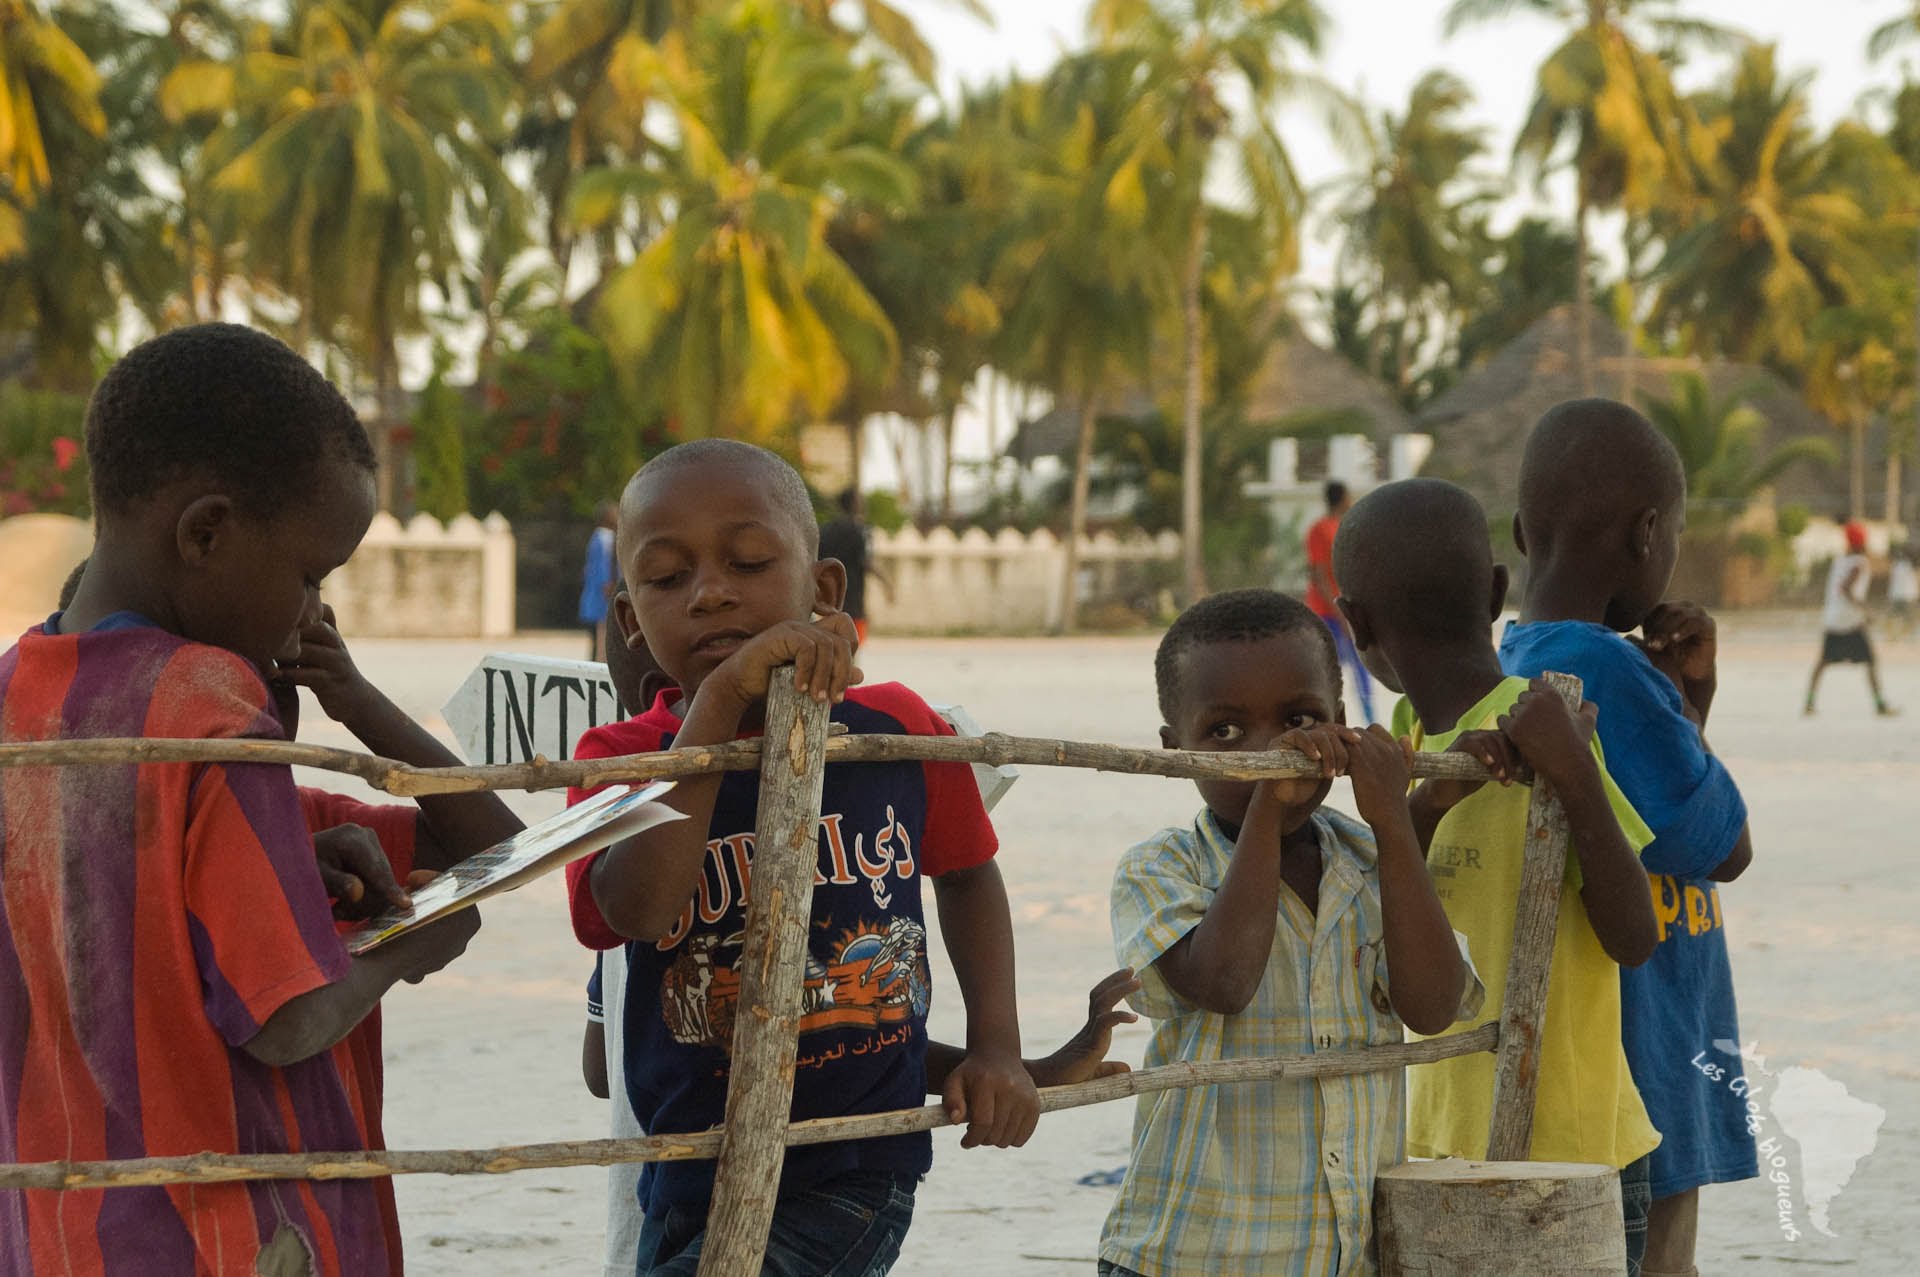 Des enfants sur la plage du village de jambiani à Zanzibar, un dvd de bruce lee à la main